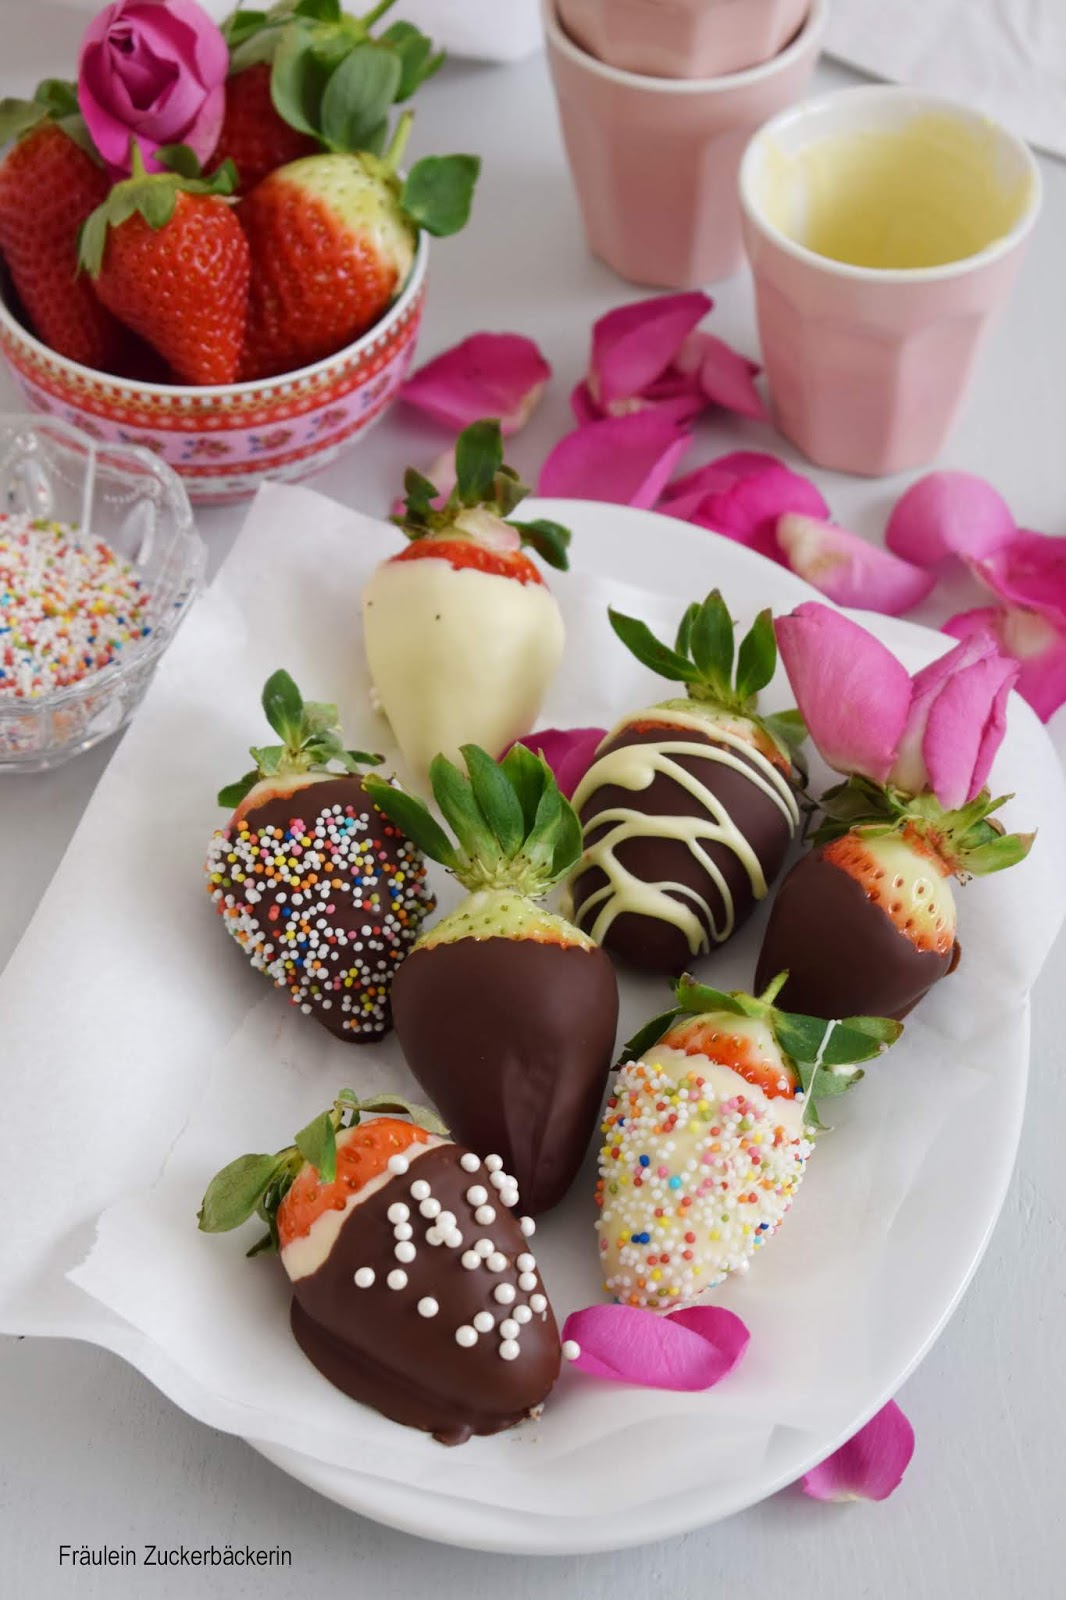 Fräulein Zuckerbäckerin: Erdbeeren mit Schokolade